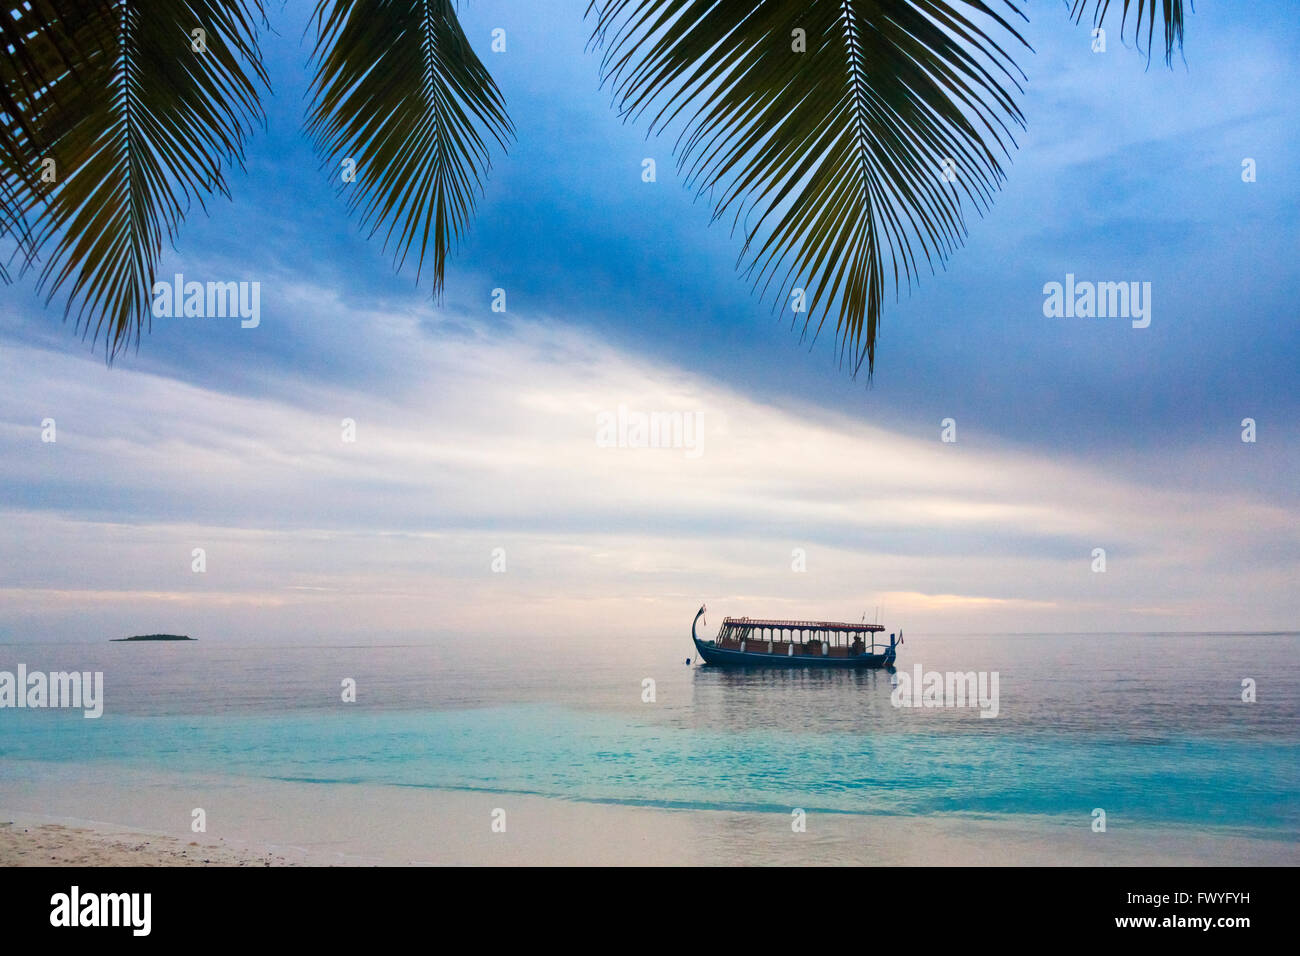 Dhonis, Maldivian boat in the ocean, Maldives Stock Photo